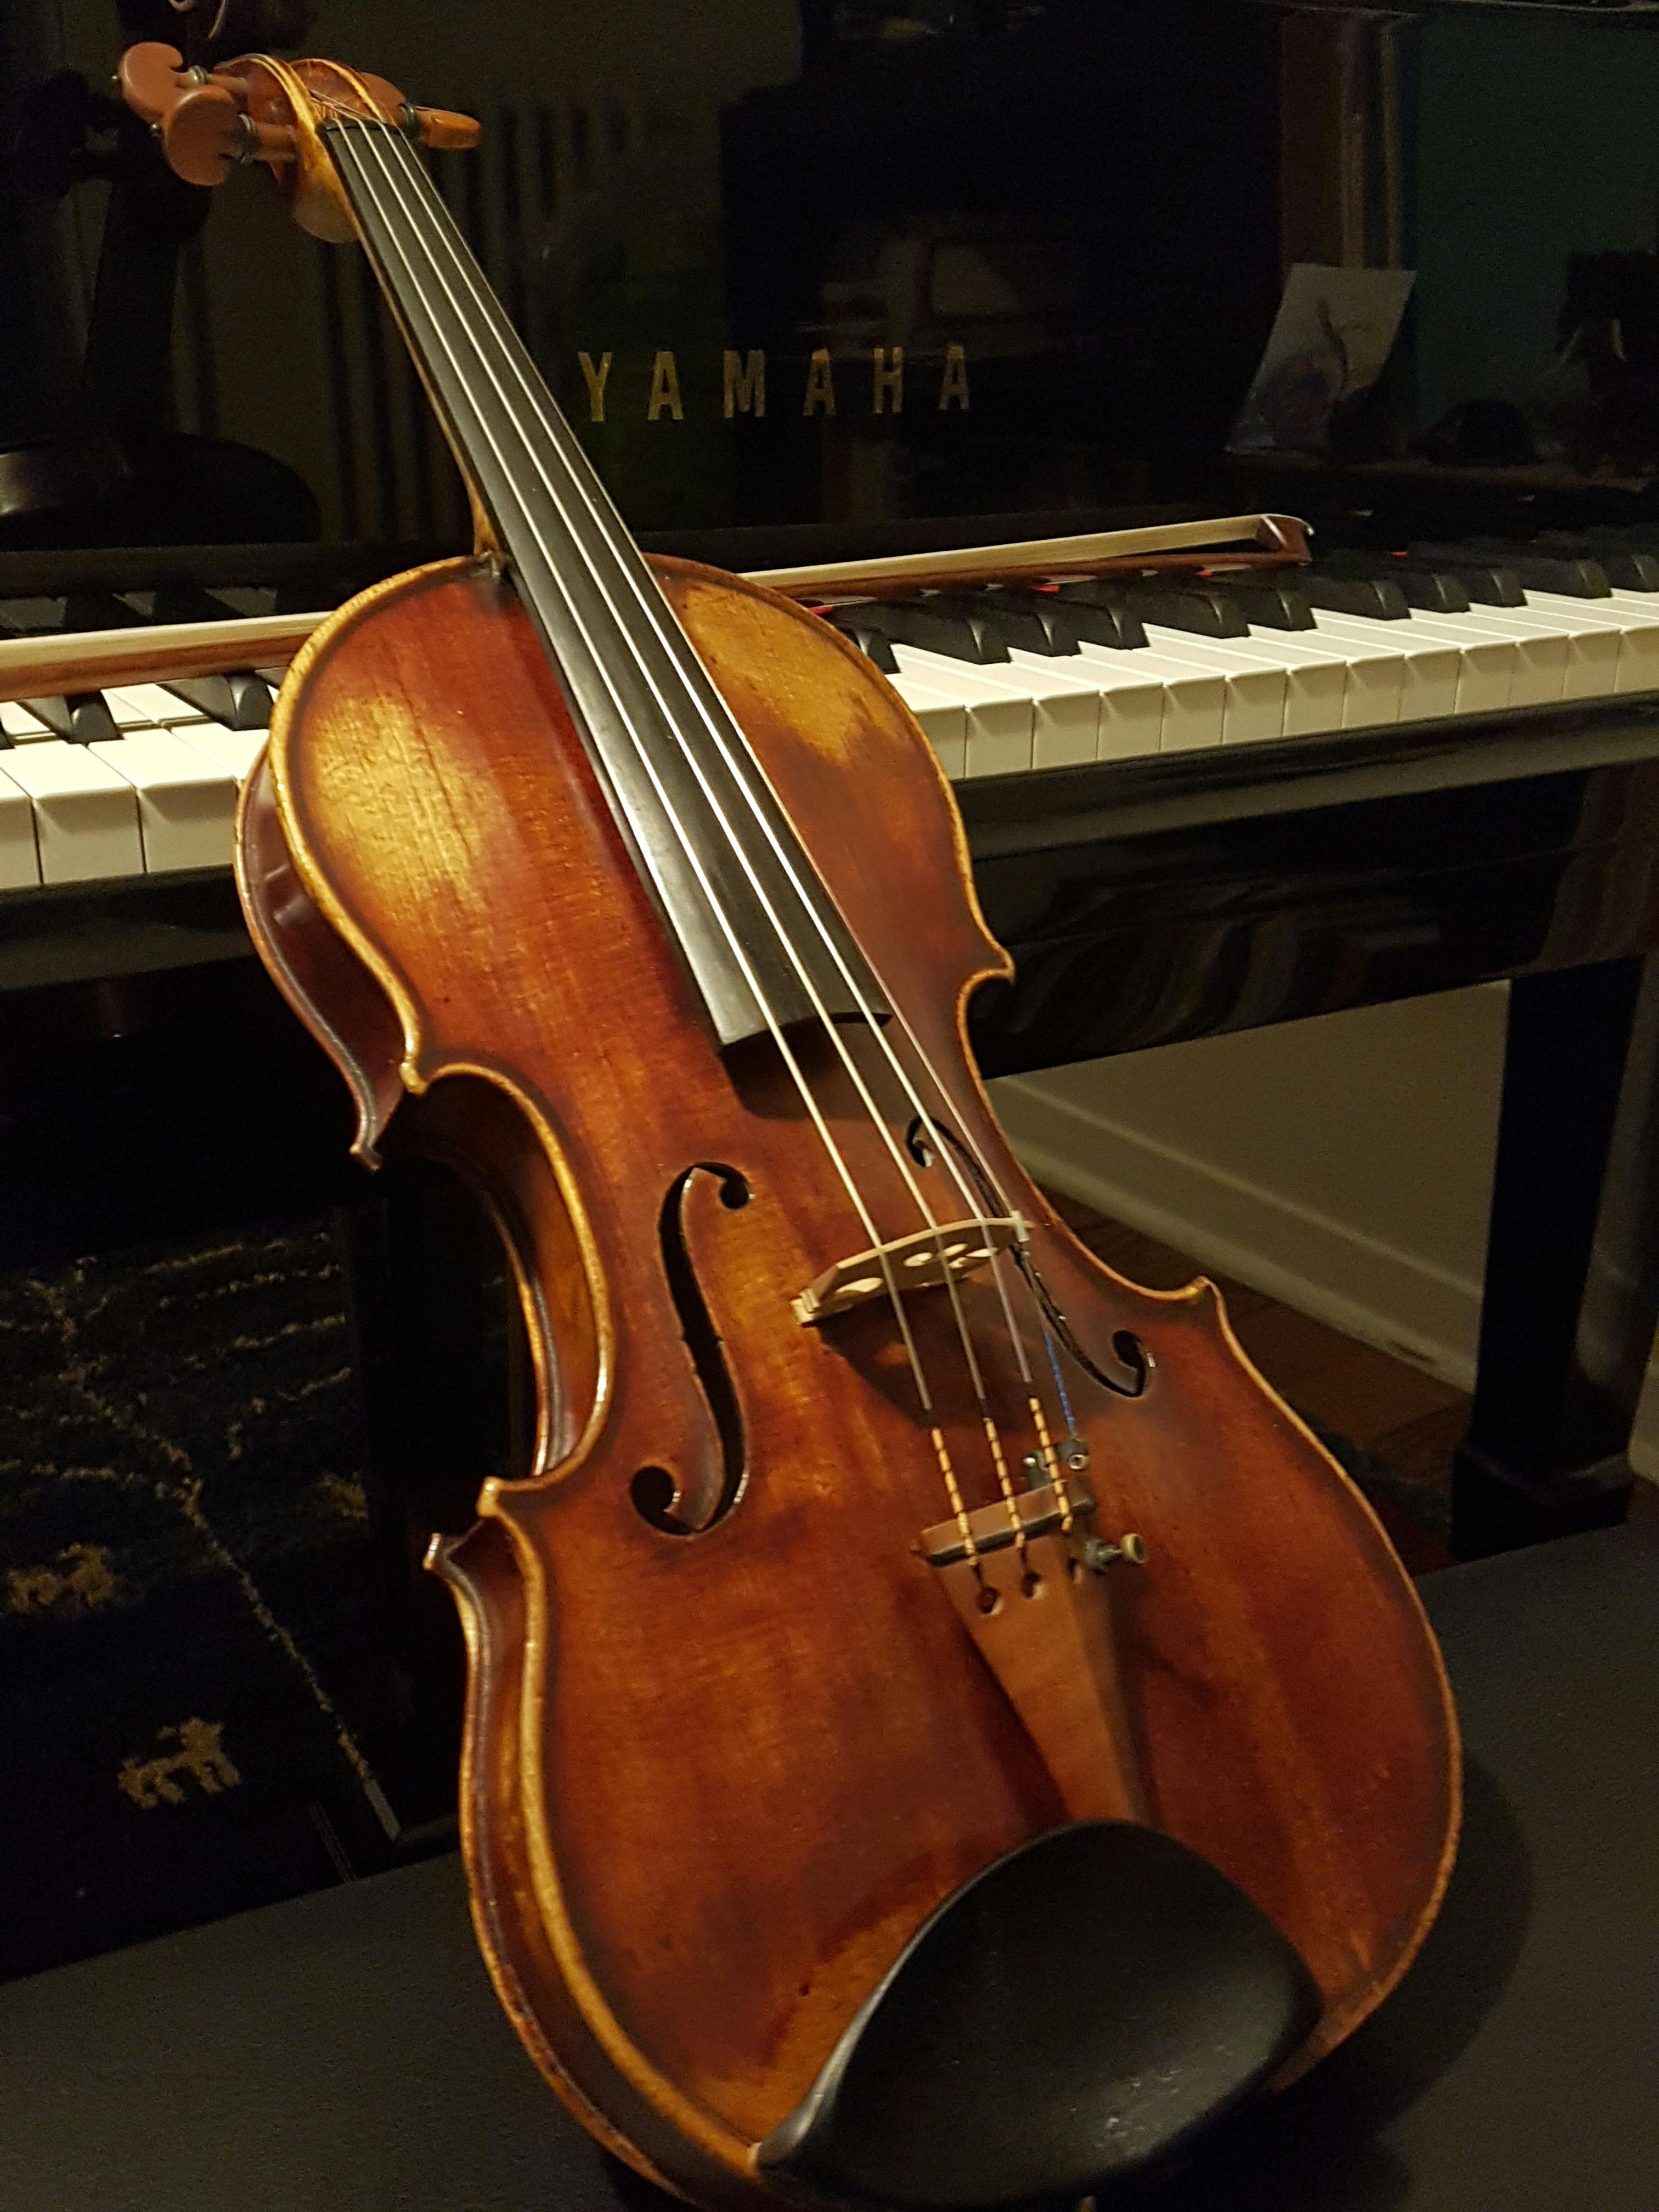 Cours de violon (adultes)  Ecole de musique Lausanne